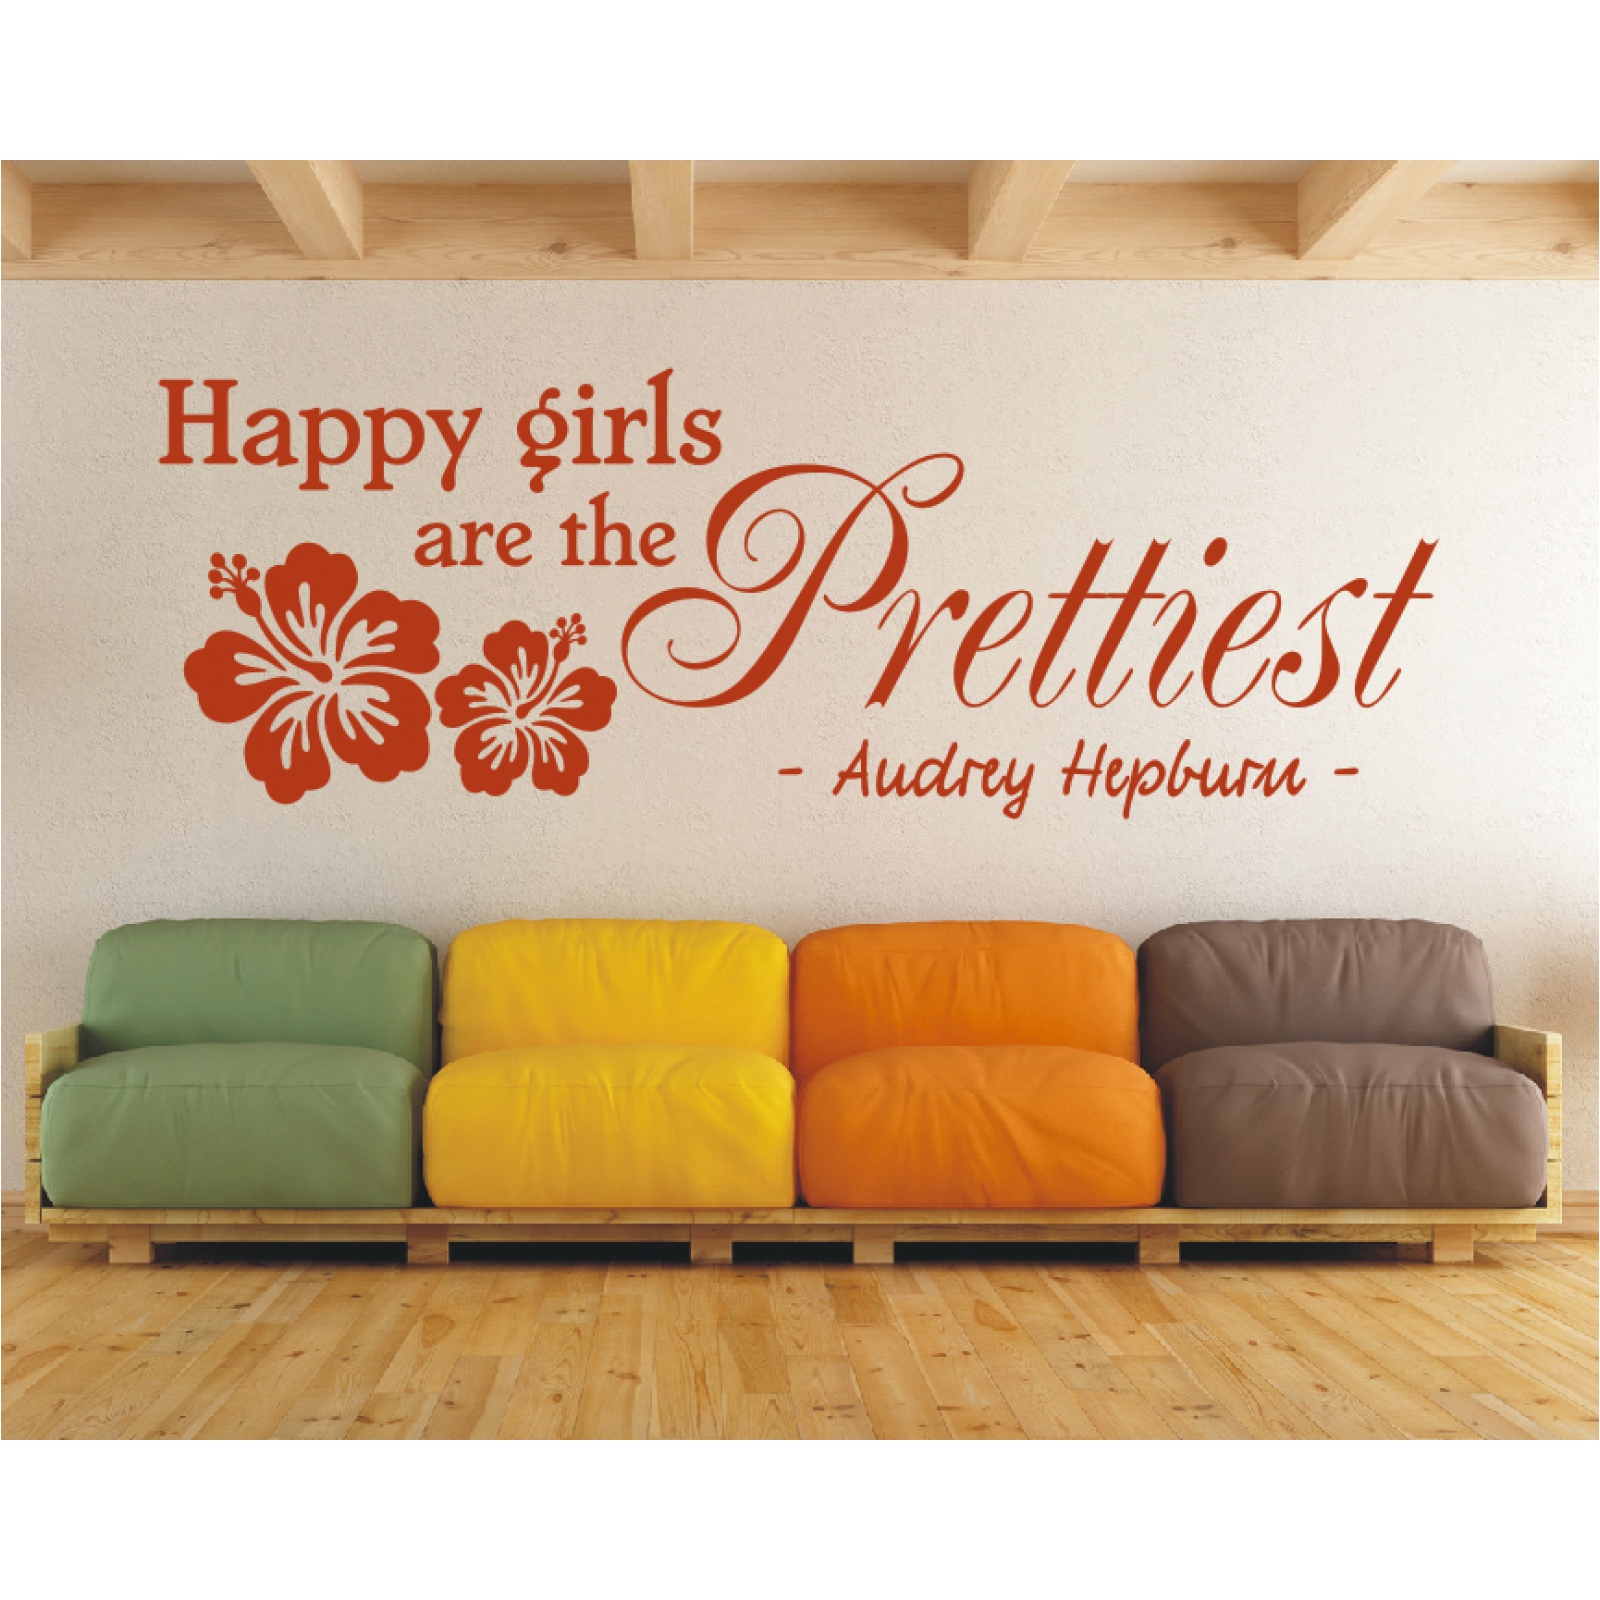 Happy girls are the prettiest Audrey Hepburn